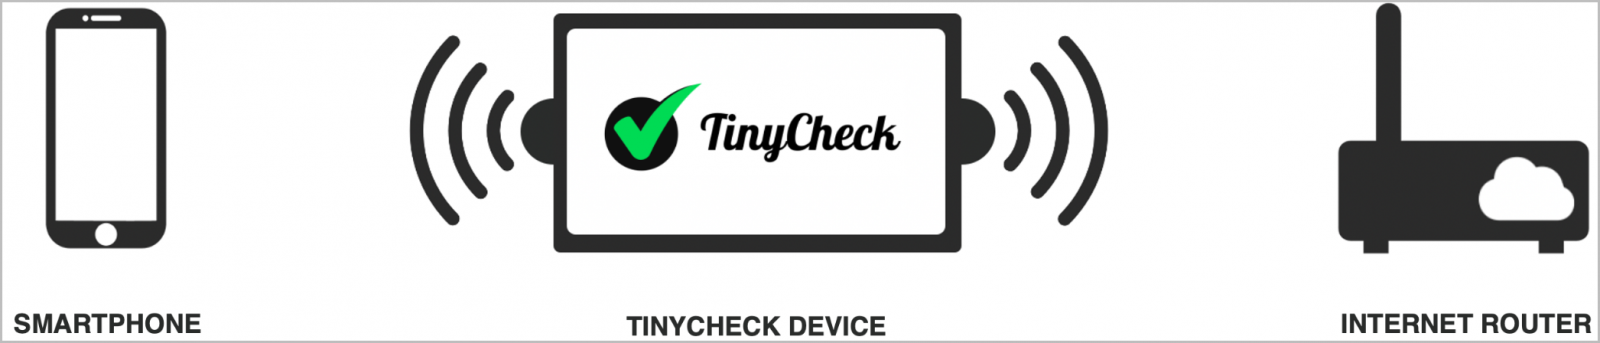 Diagrama funcional de TinyCheck